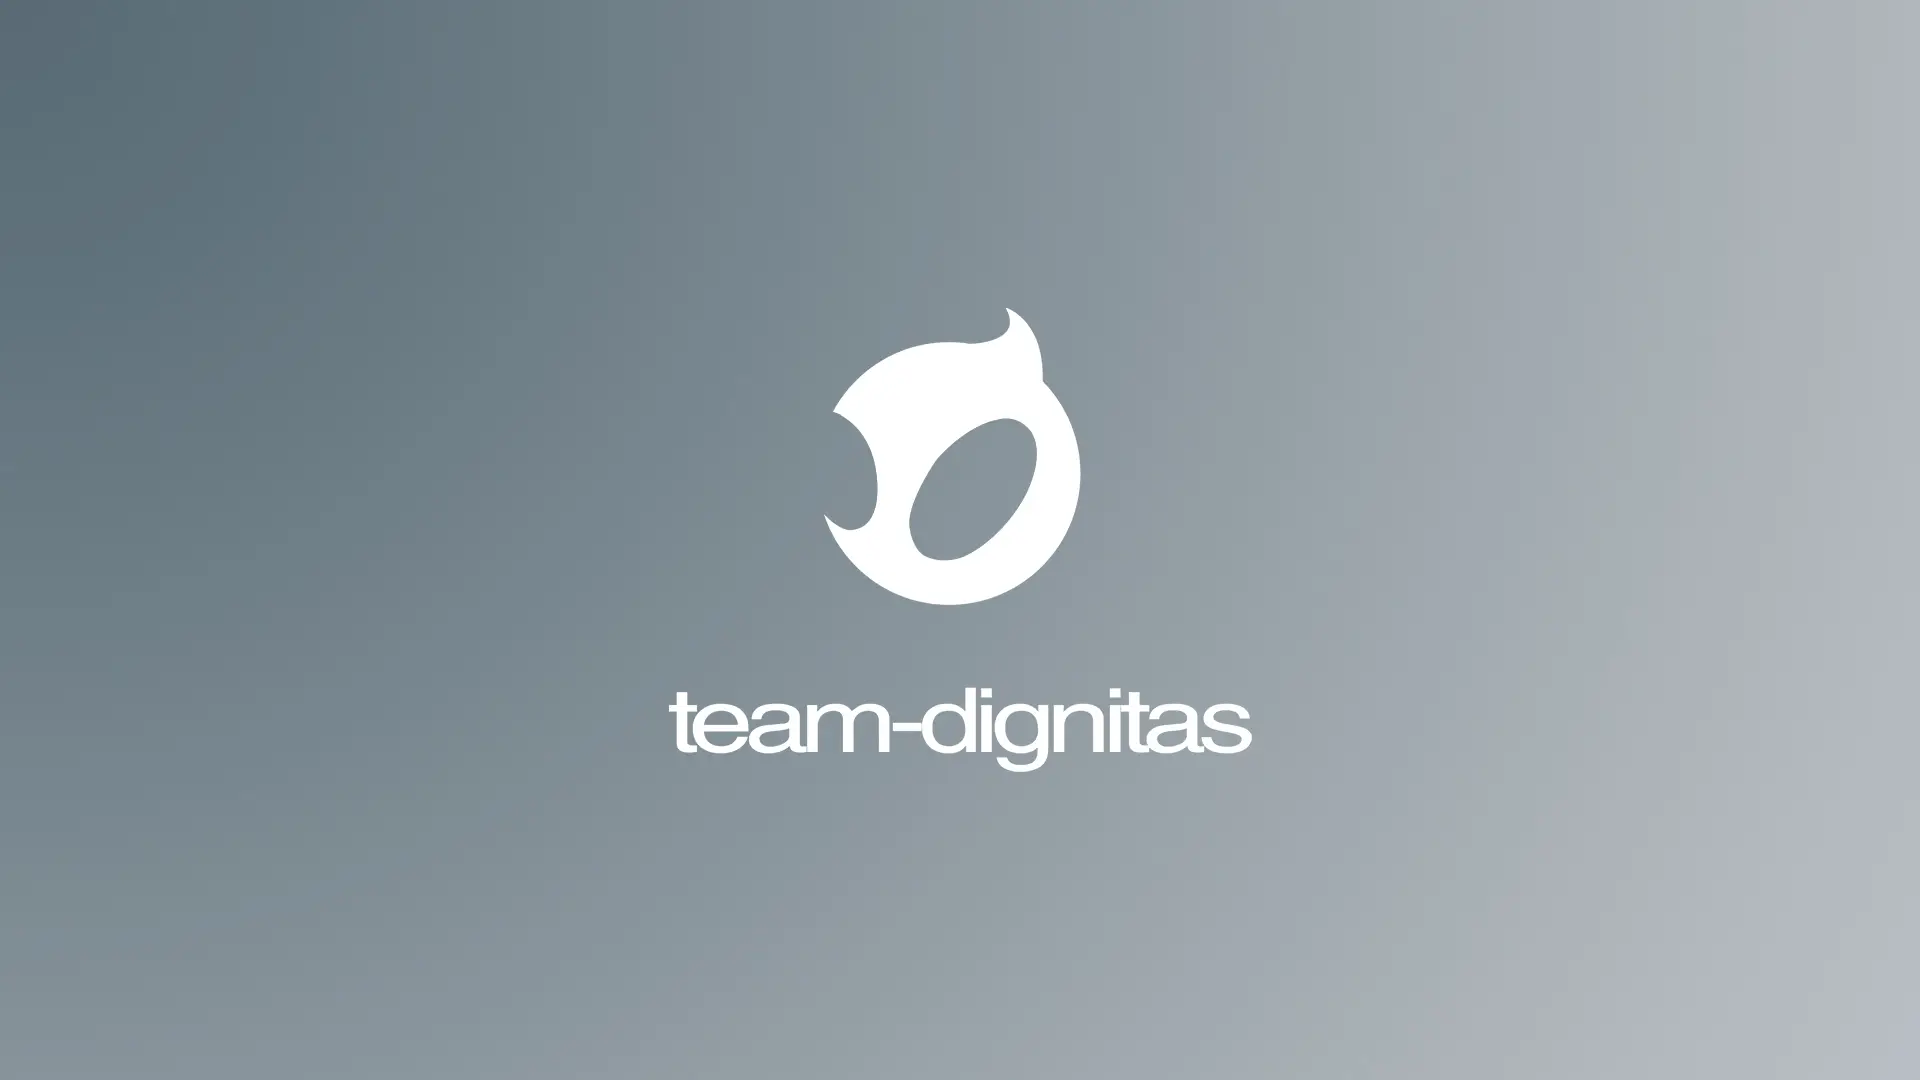 Team Dignitas Wallpaper